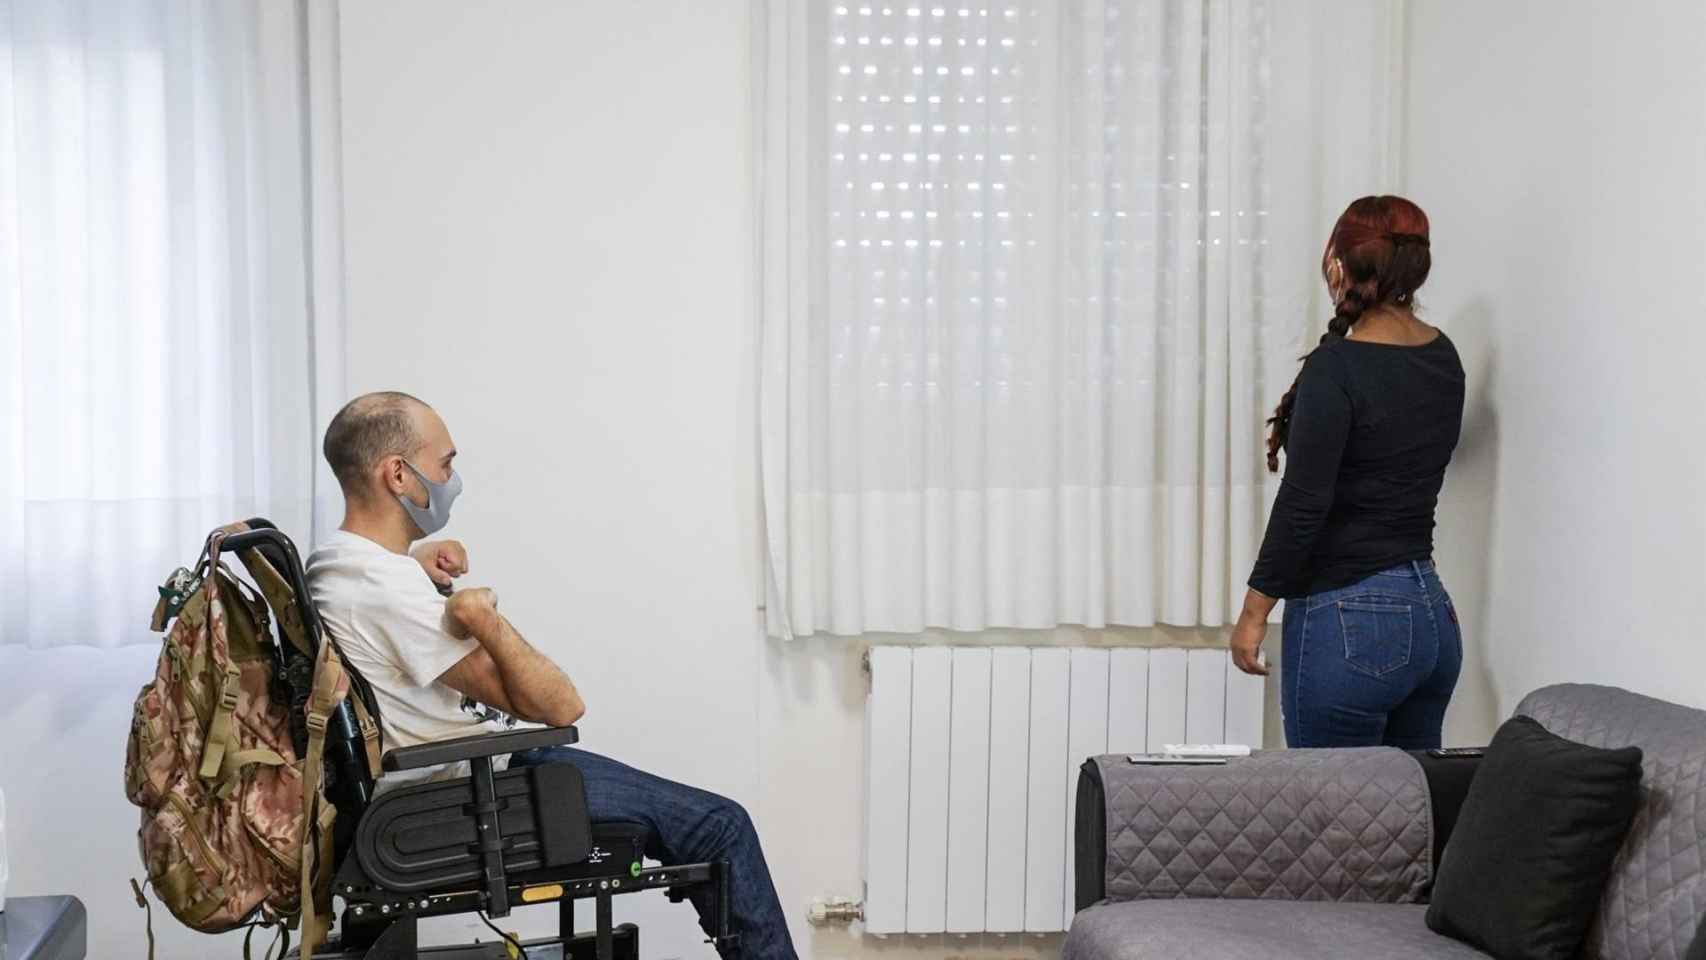 El Ayuntamiento de Barcelona anuncia subvenciones para mejorar la accesibilidad a las viviendas de personas con discapacidad / AY. DE BCN